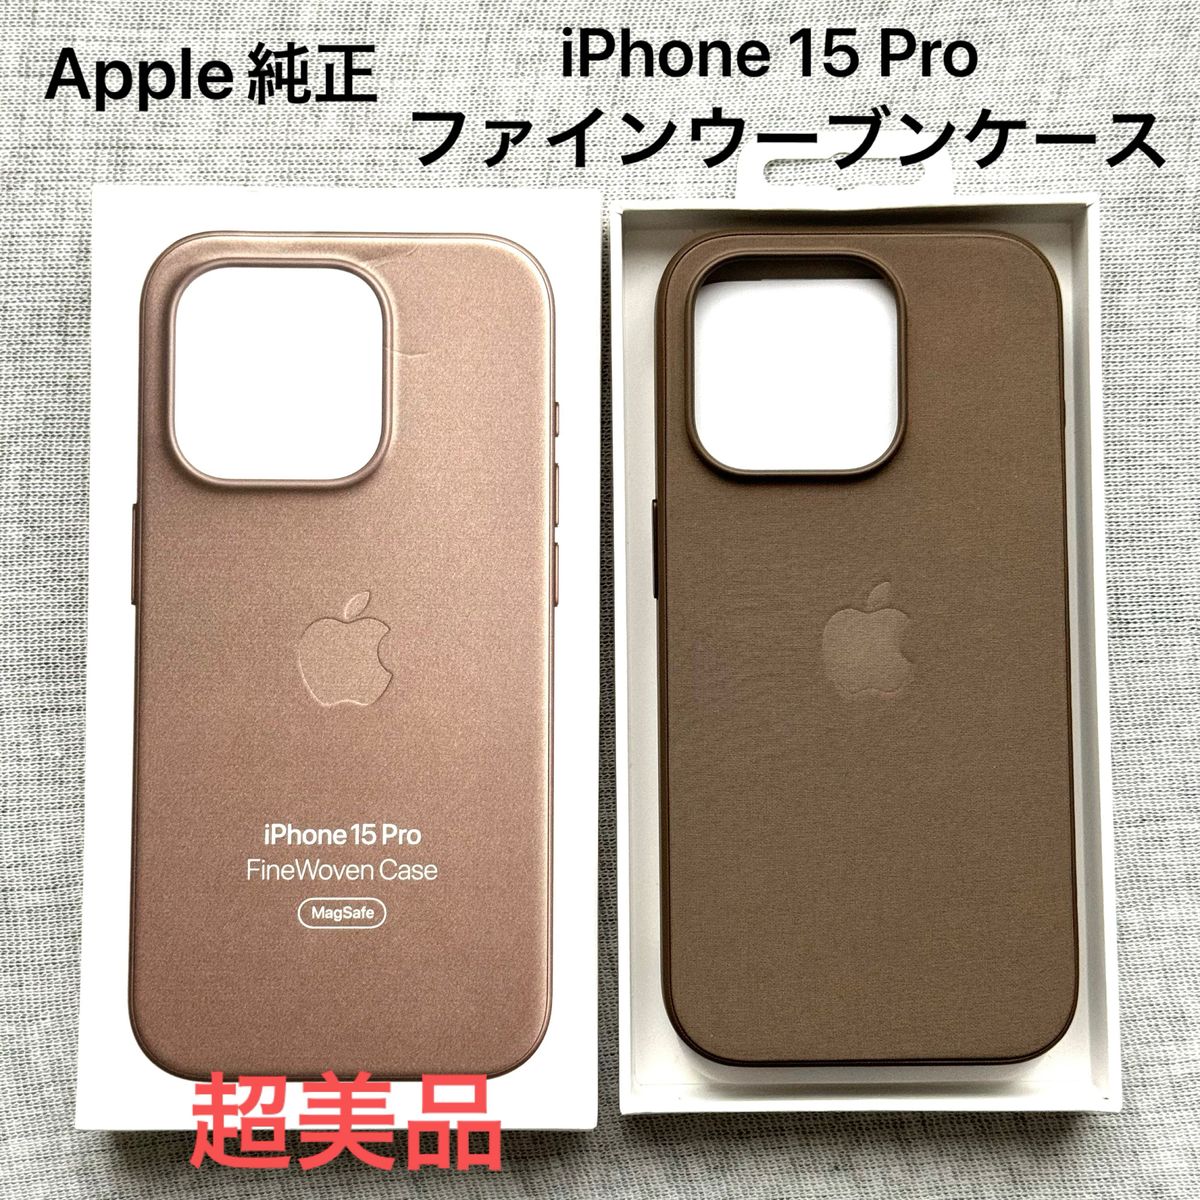 Apple純正 iPhone 15 Proファインウーブンケース MagSafe対応 トープ 超美品